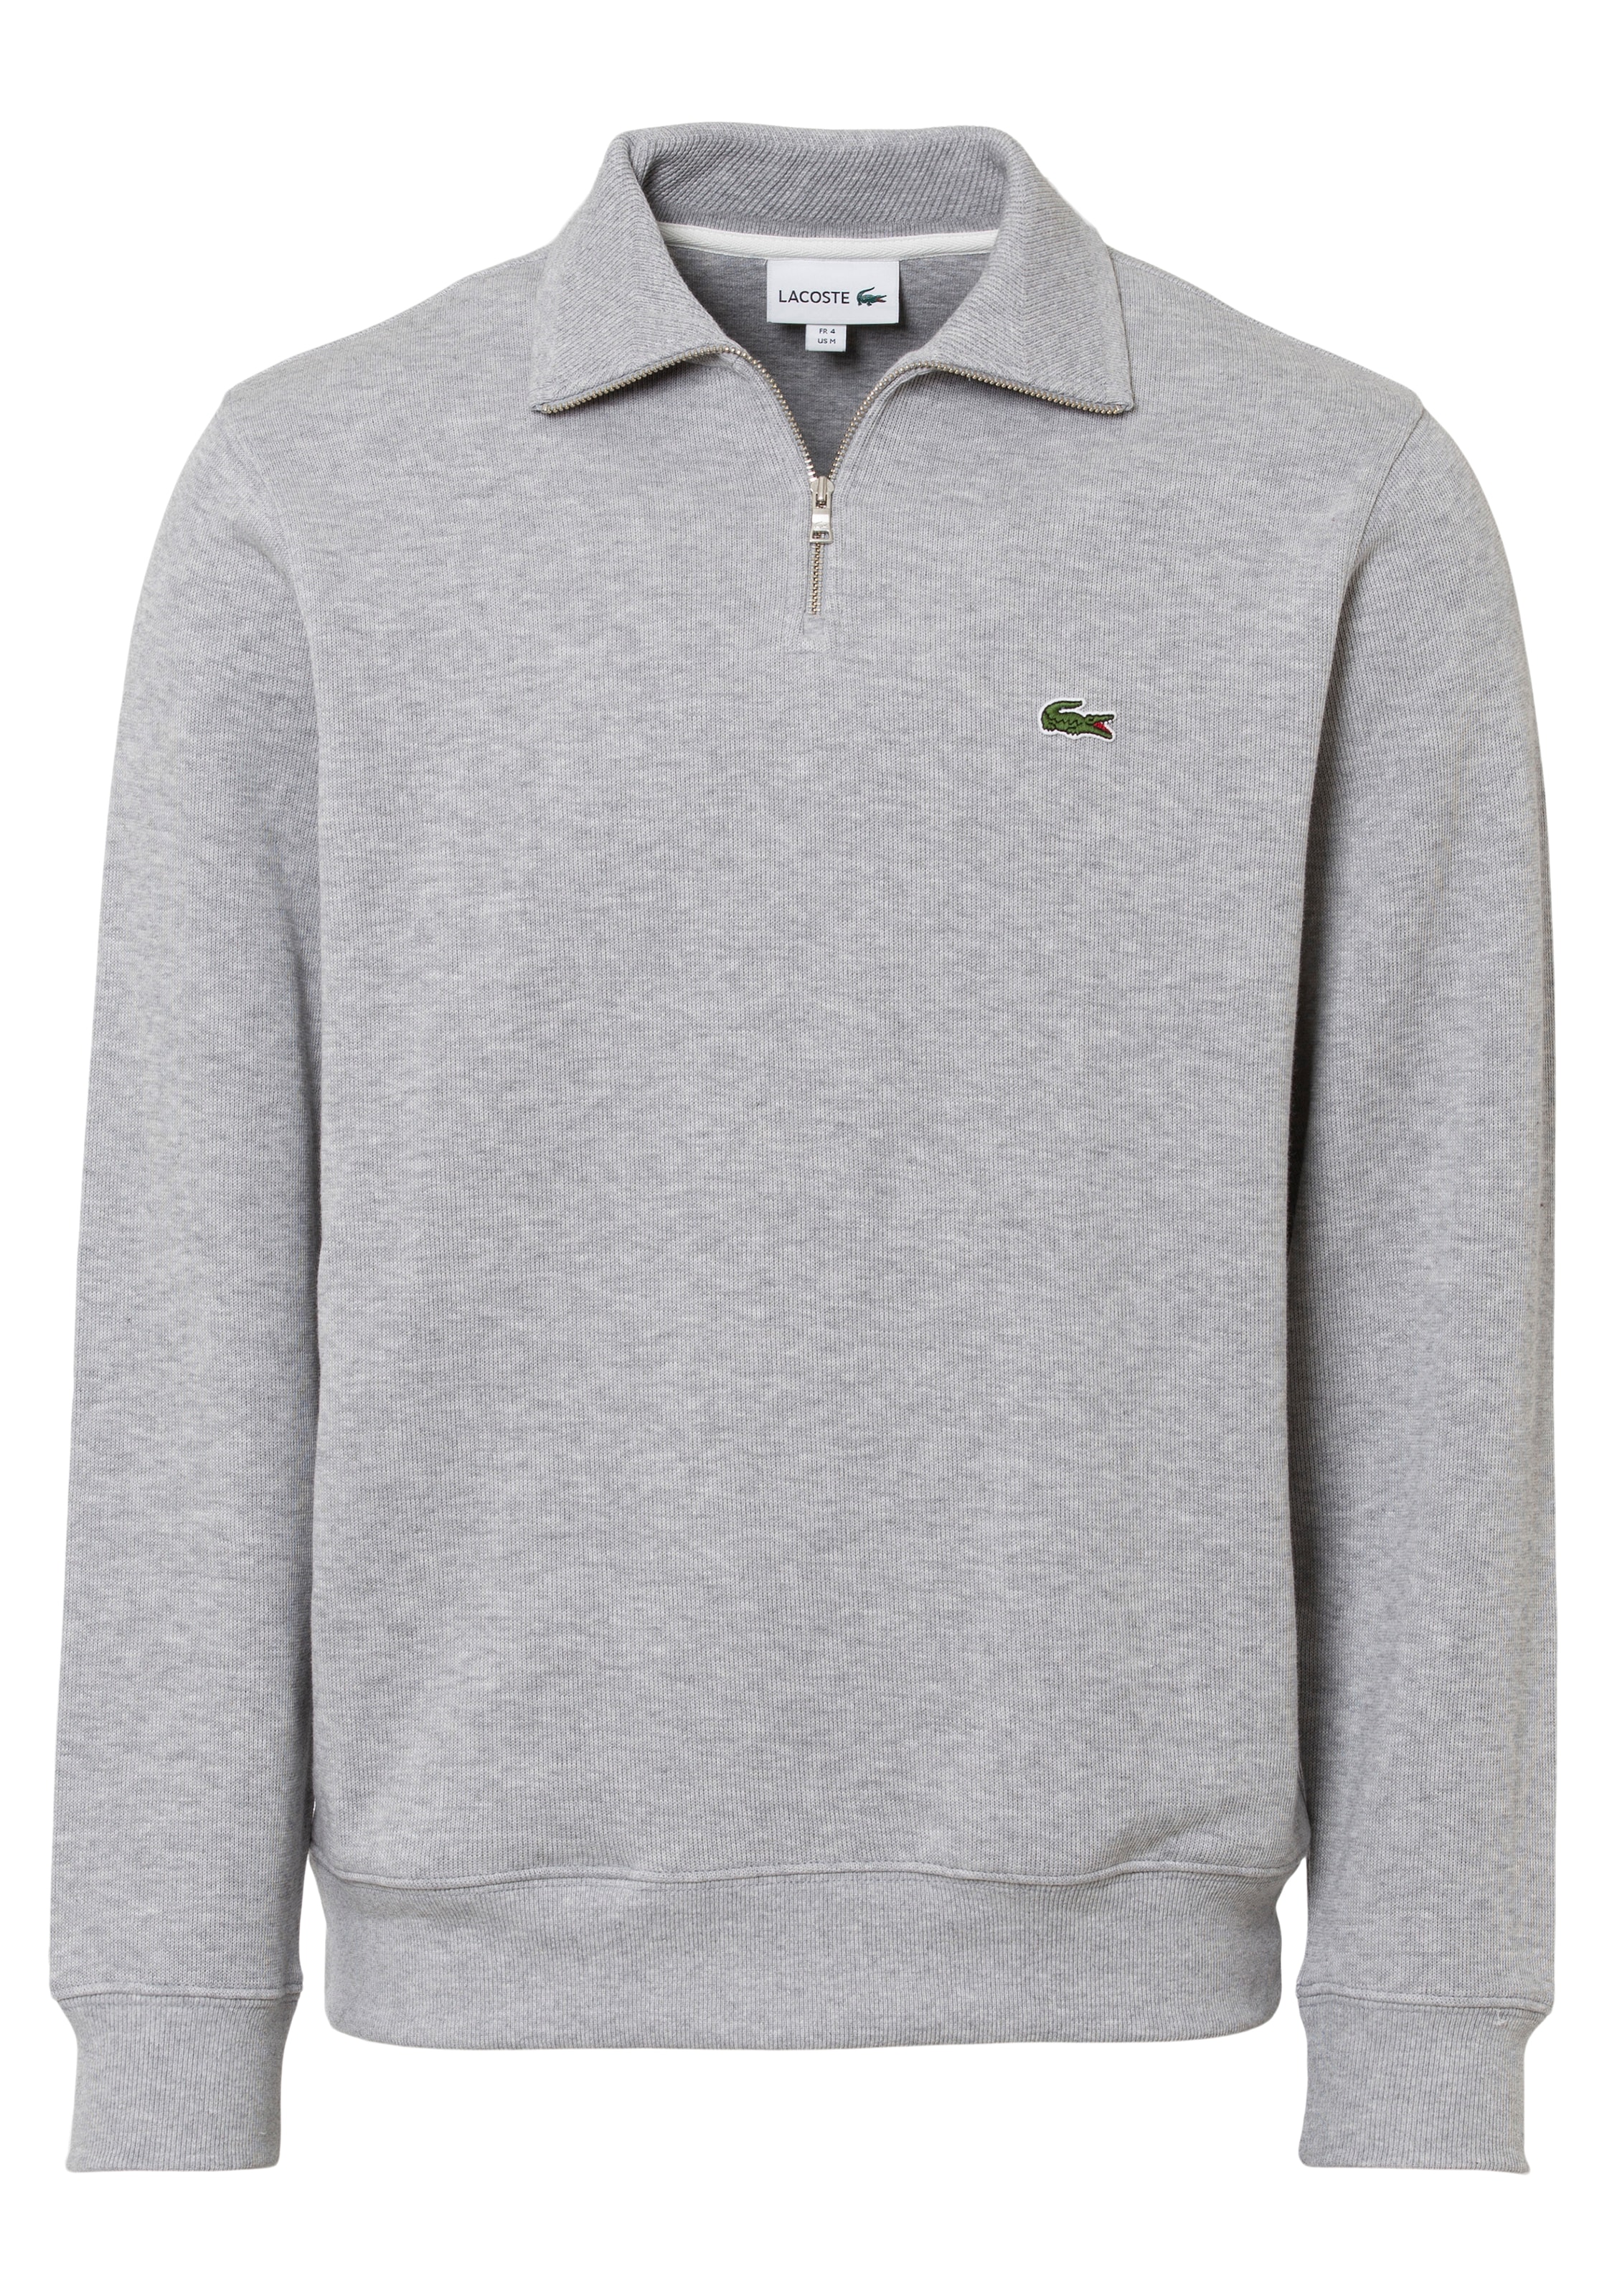 OTTO online Stehkragen Lacoste mit Sweatshirt kaufen »Sweattroyer«, bei